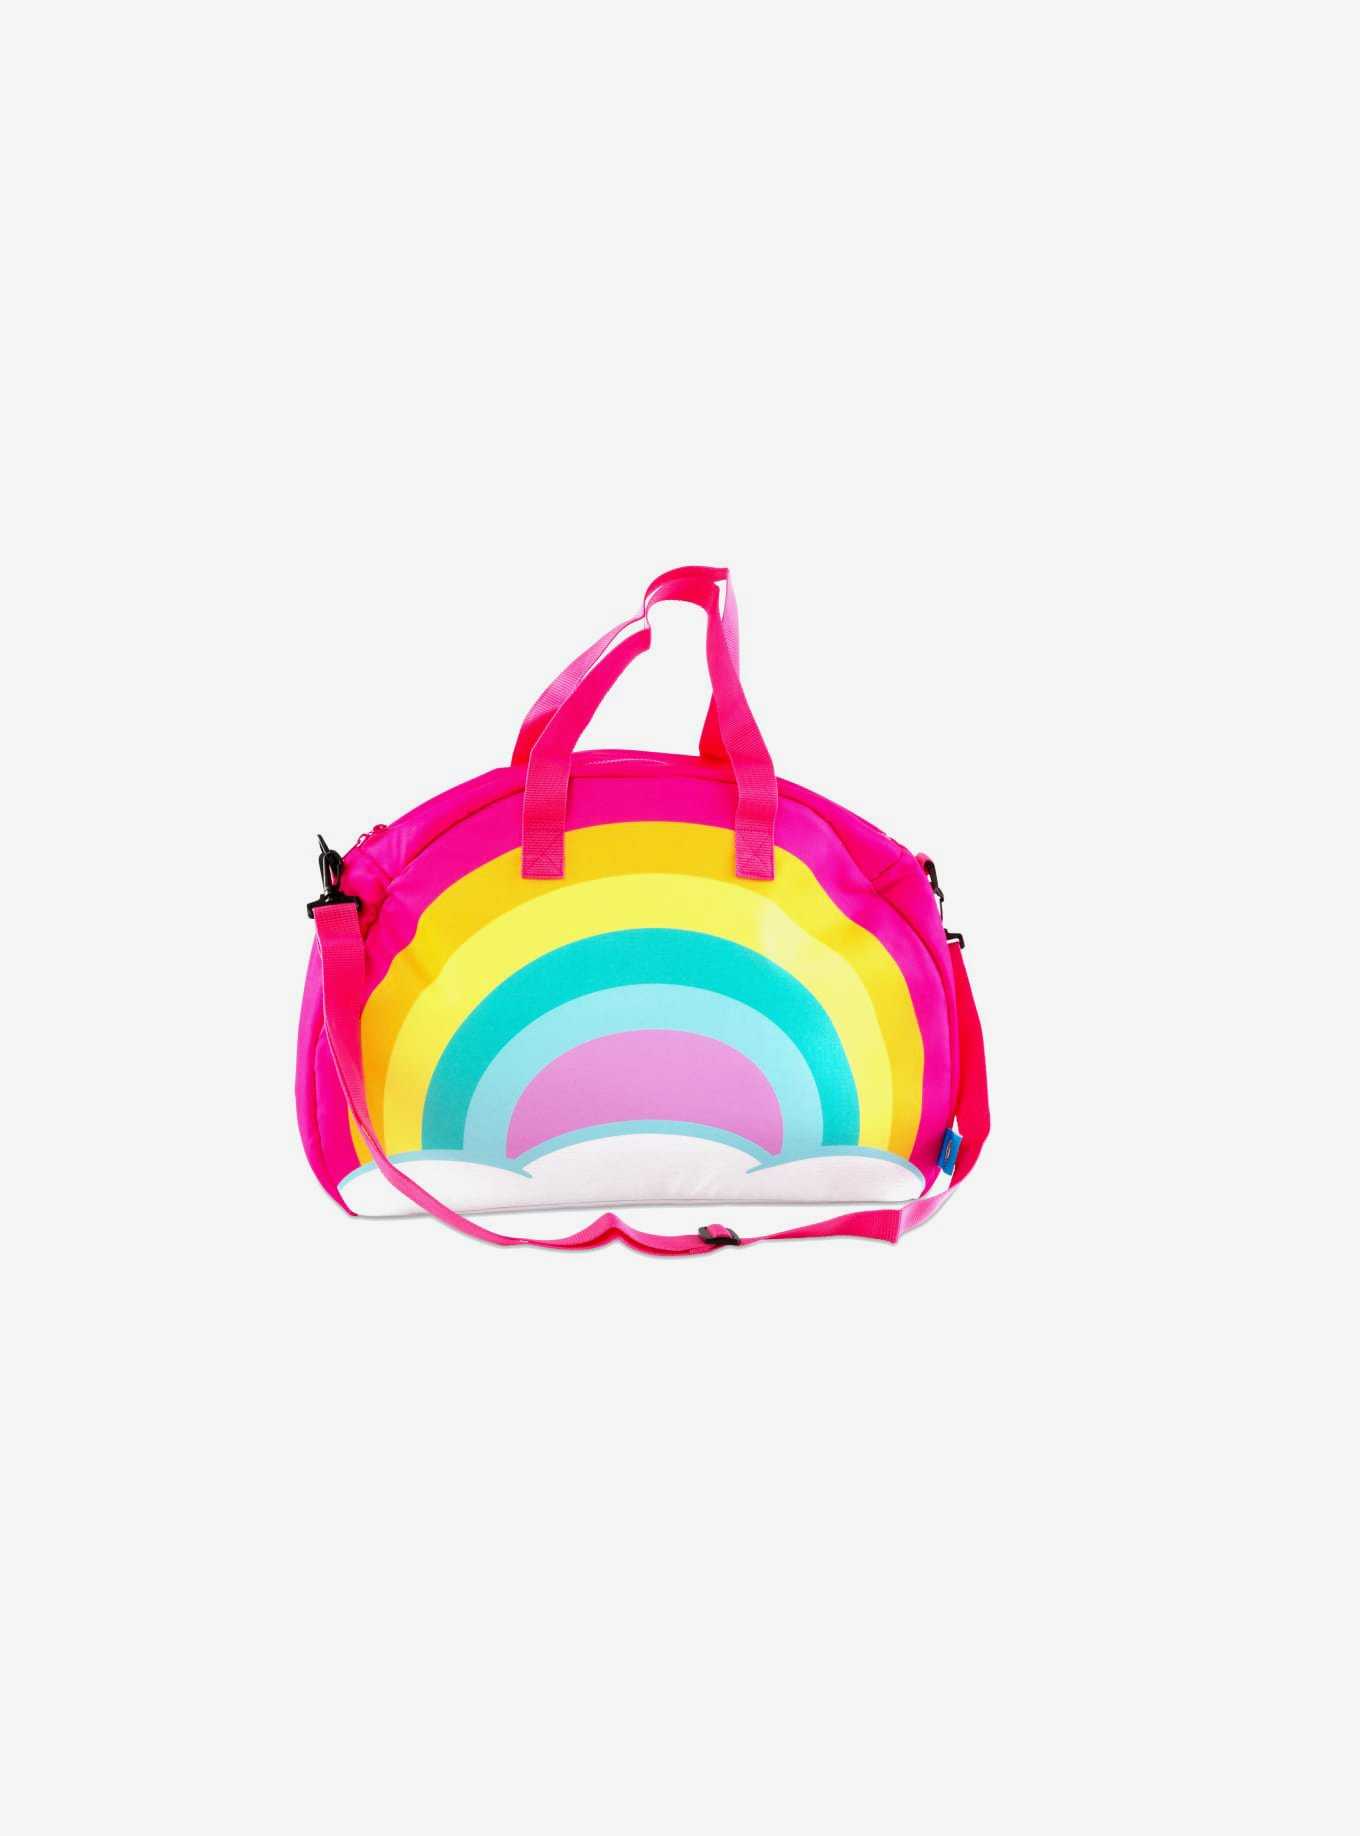 Rainbow Crossbody Tote Cooler Bag, , hi-res